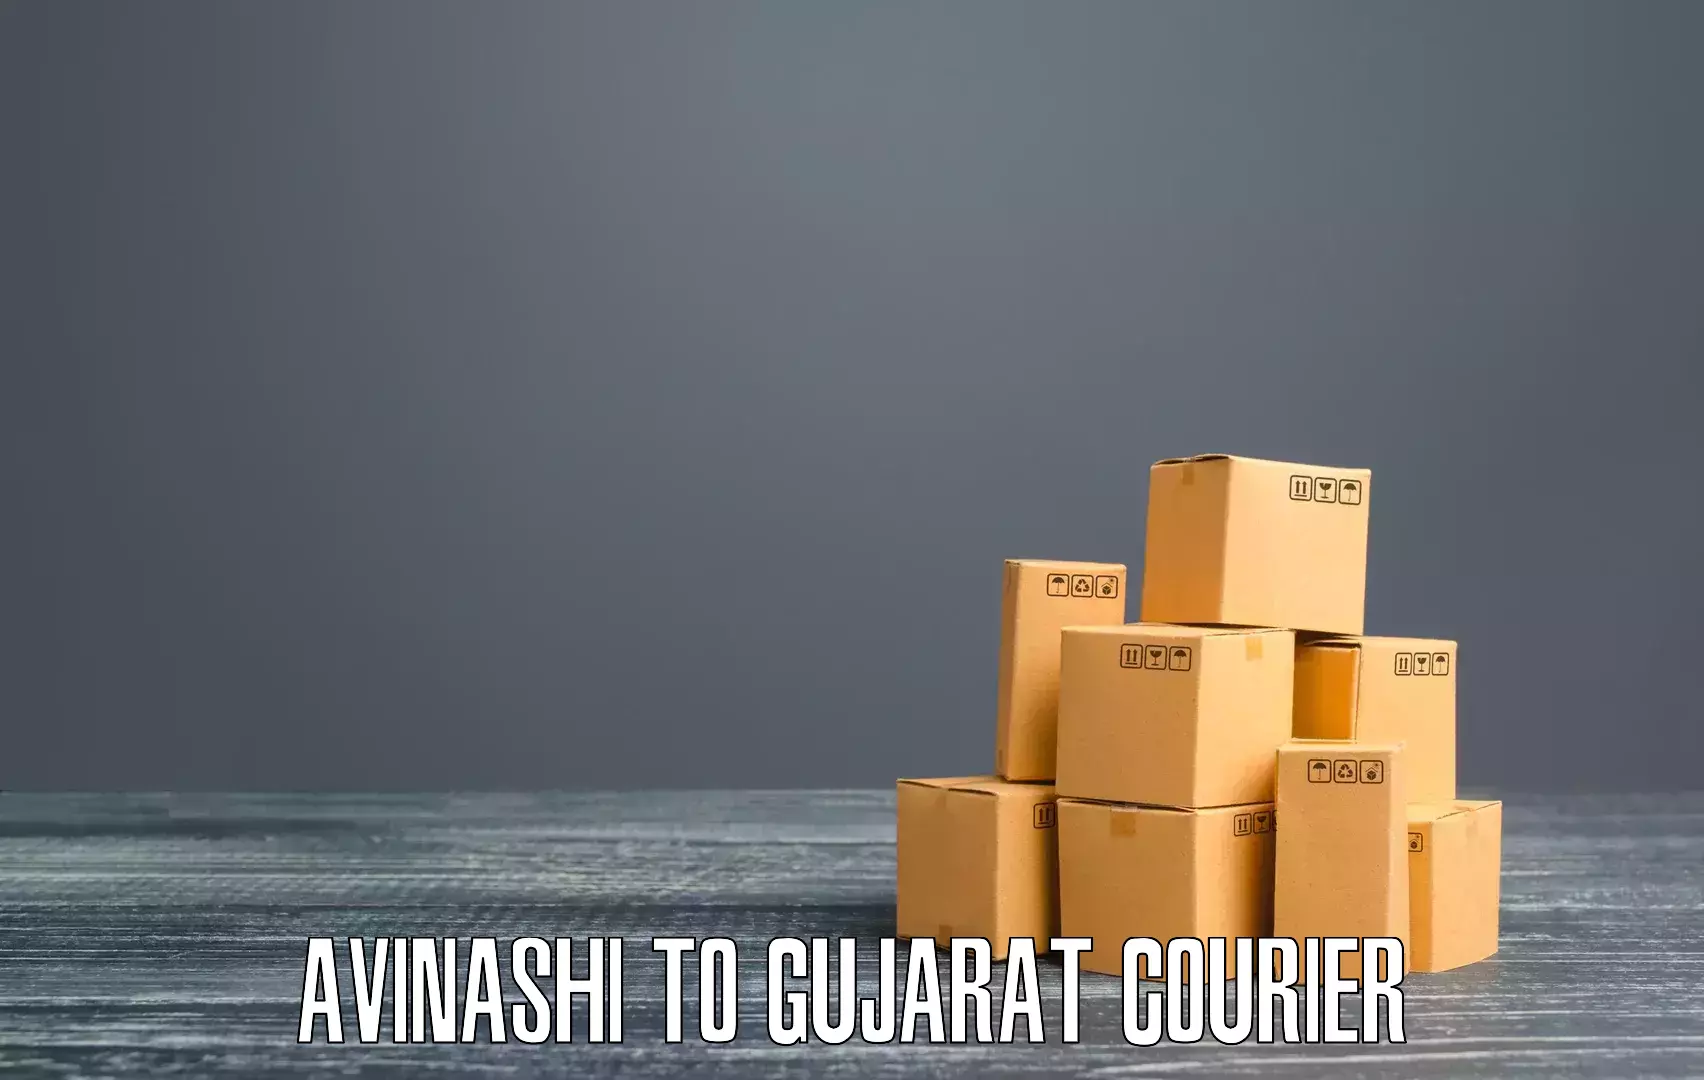 Courier service booking Avinashi to GIDC